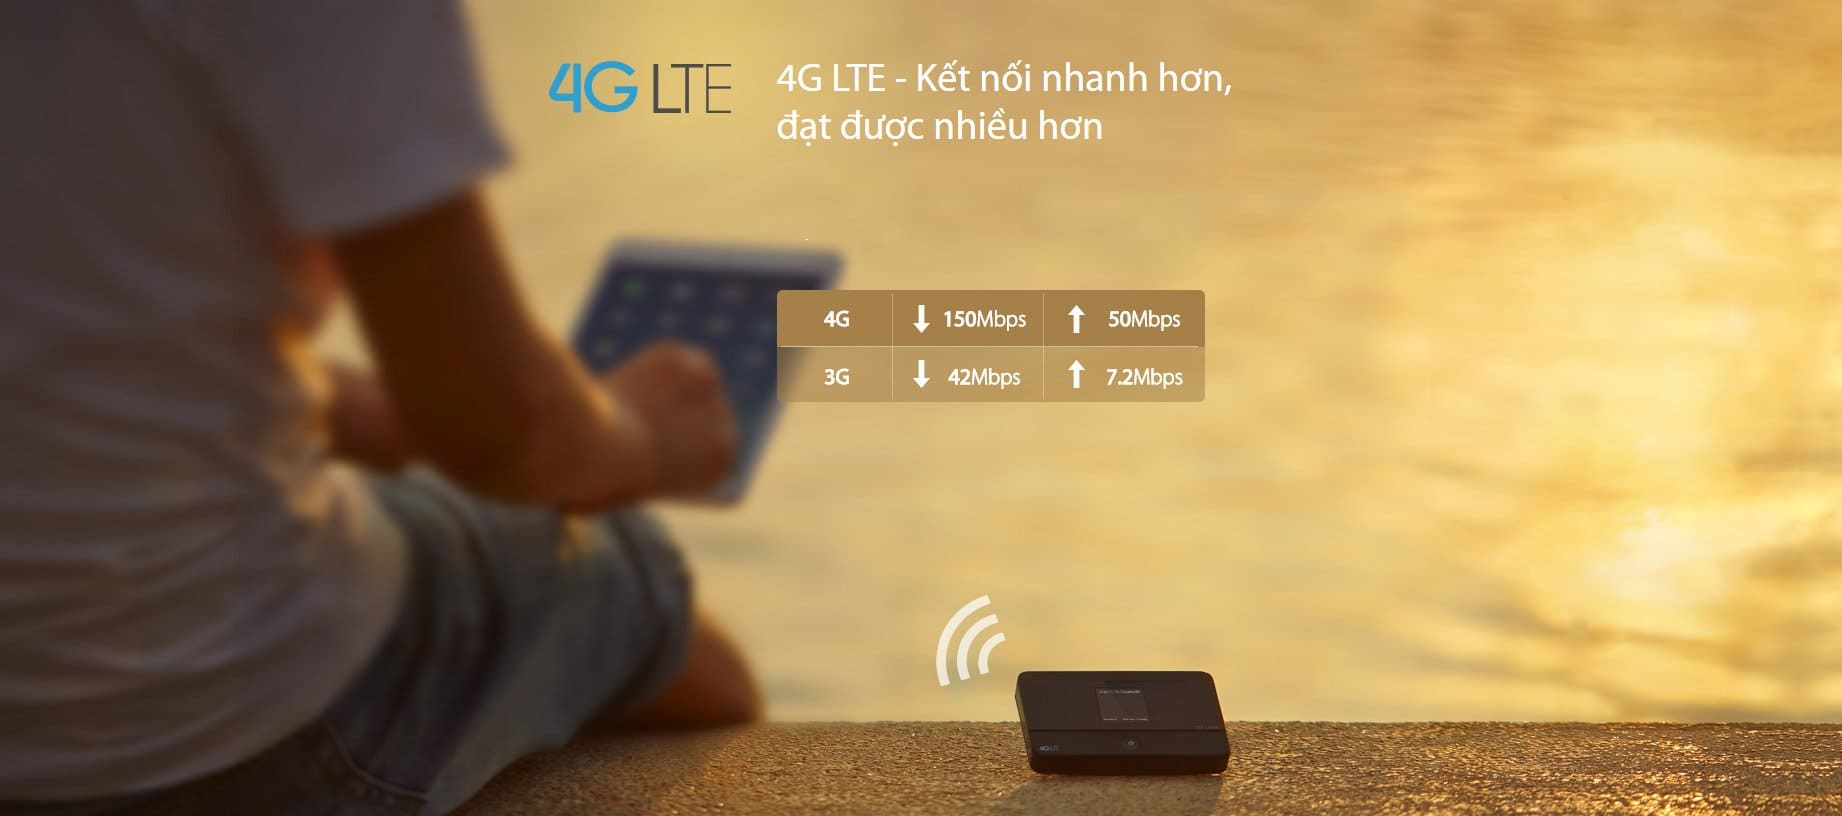 Các tính năng hấp dẫn khi sử dụng bộ phát 4G so với 3G